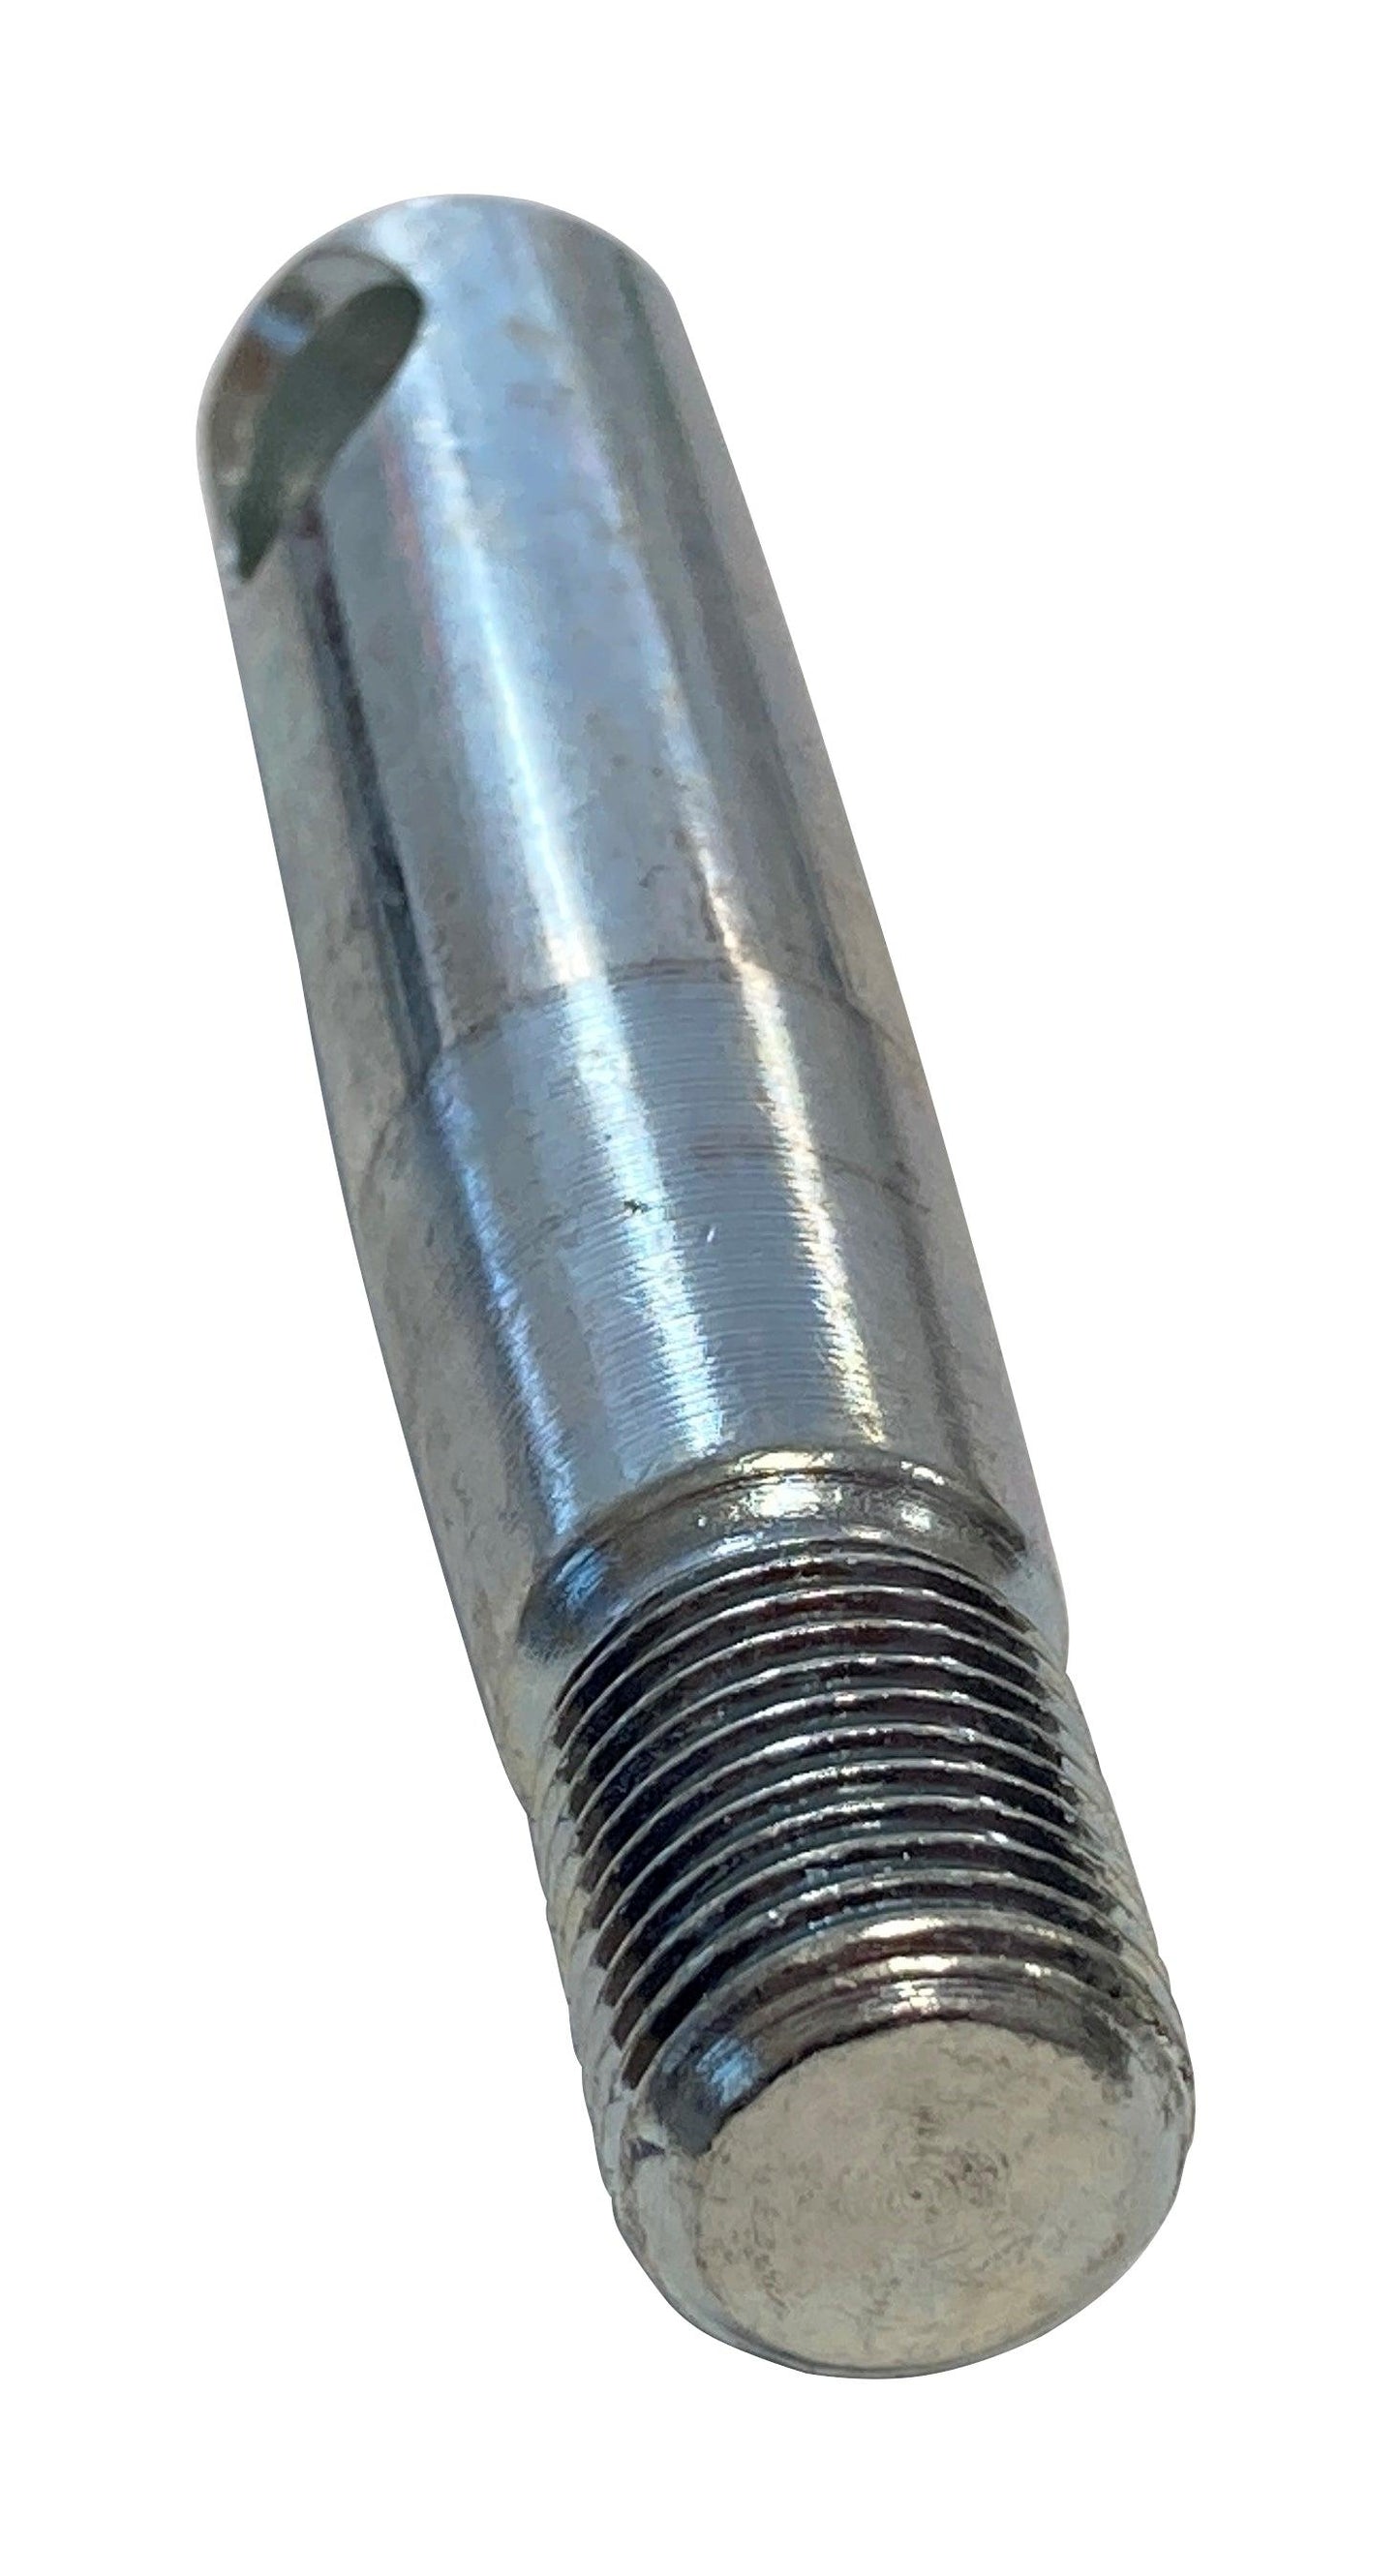 John Deere Original Equipment Pin Fastener - M136549